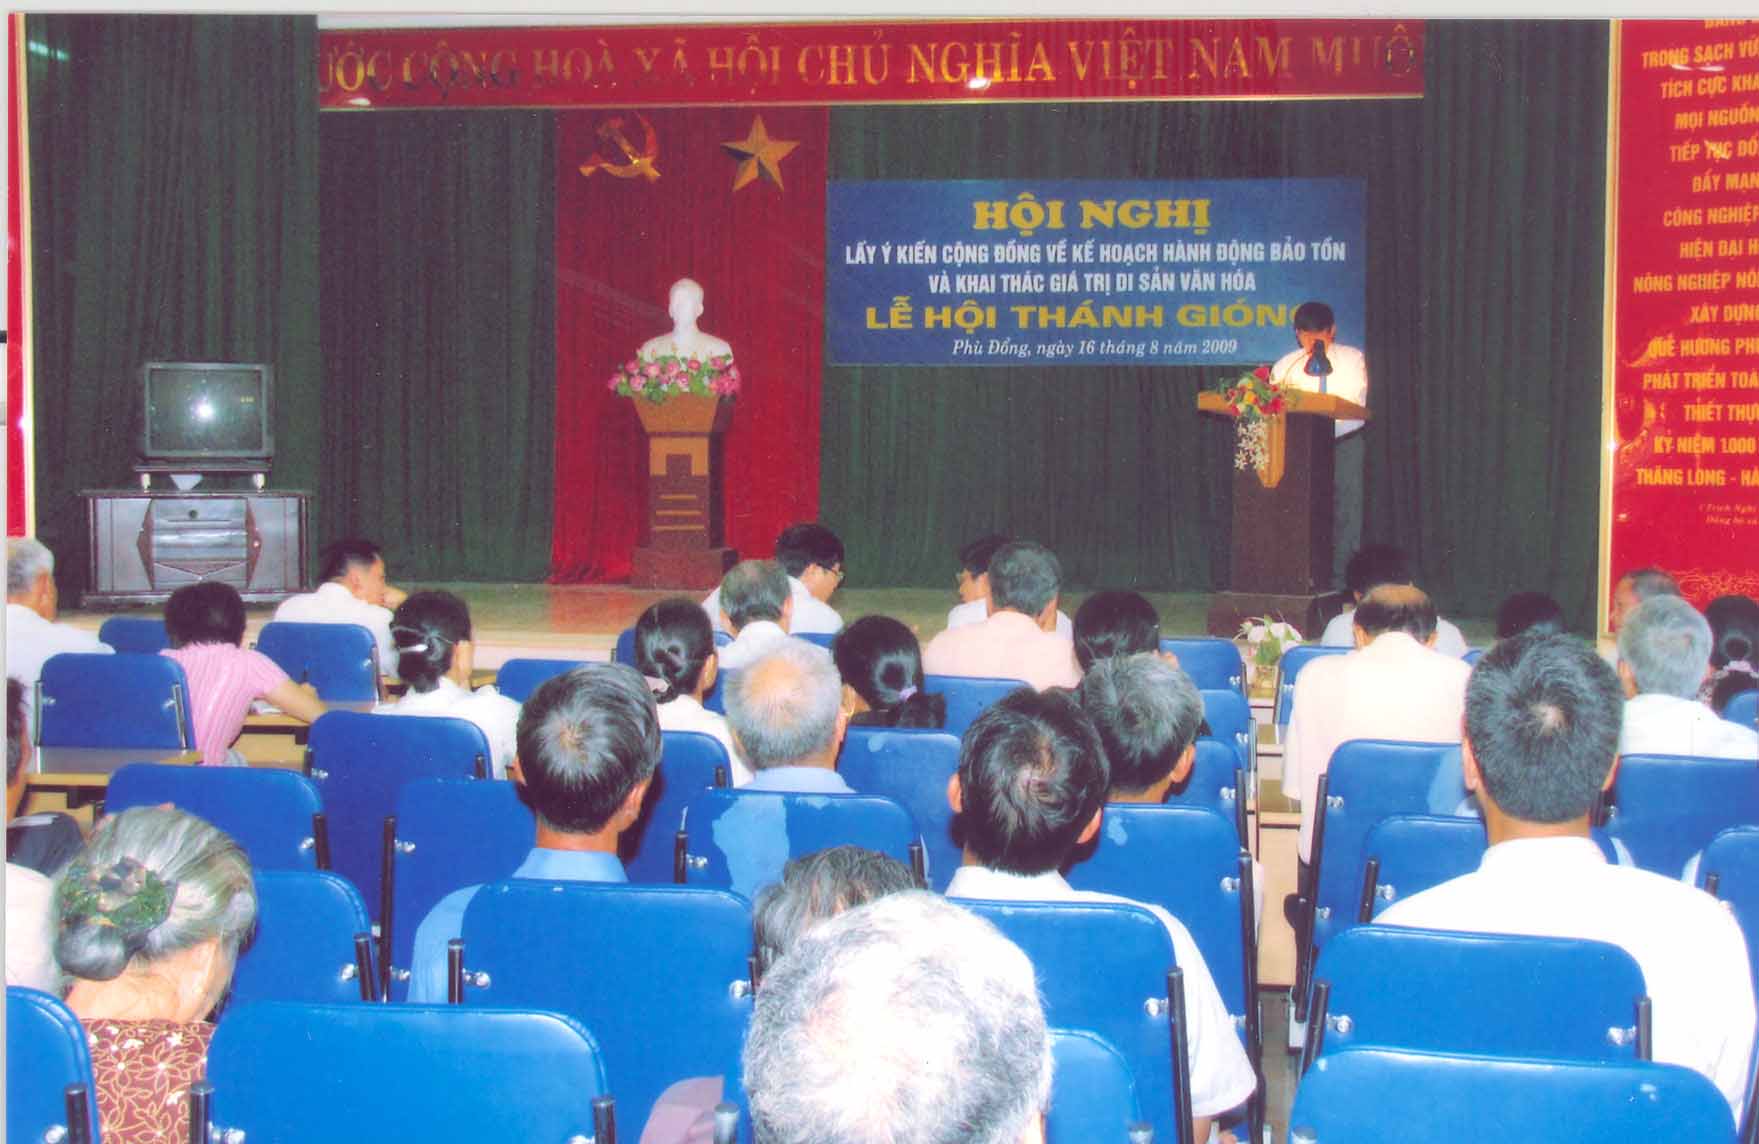 Bùi Quang Thanh, 2009. © Viện Văn hóa Nghệ thuật Việt Nam.